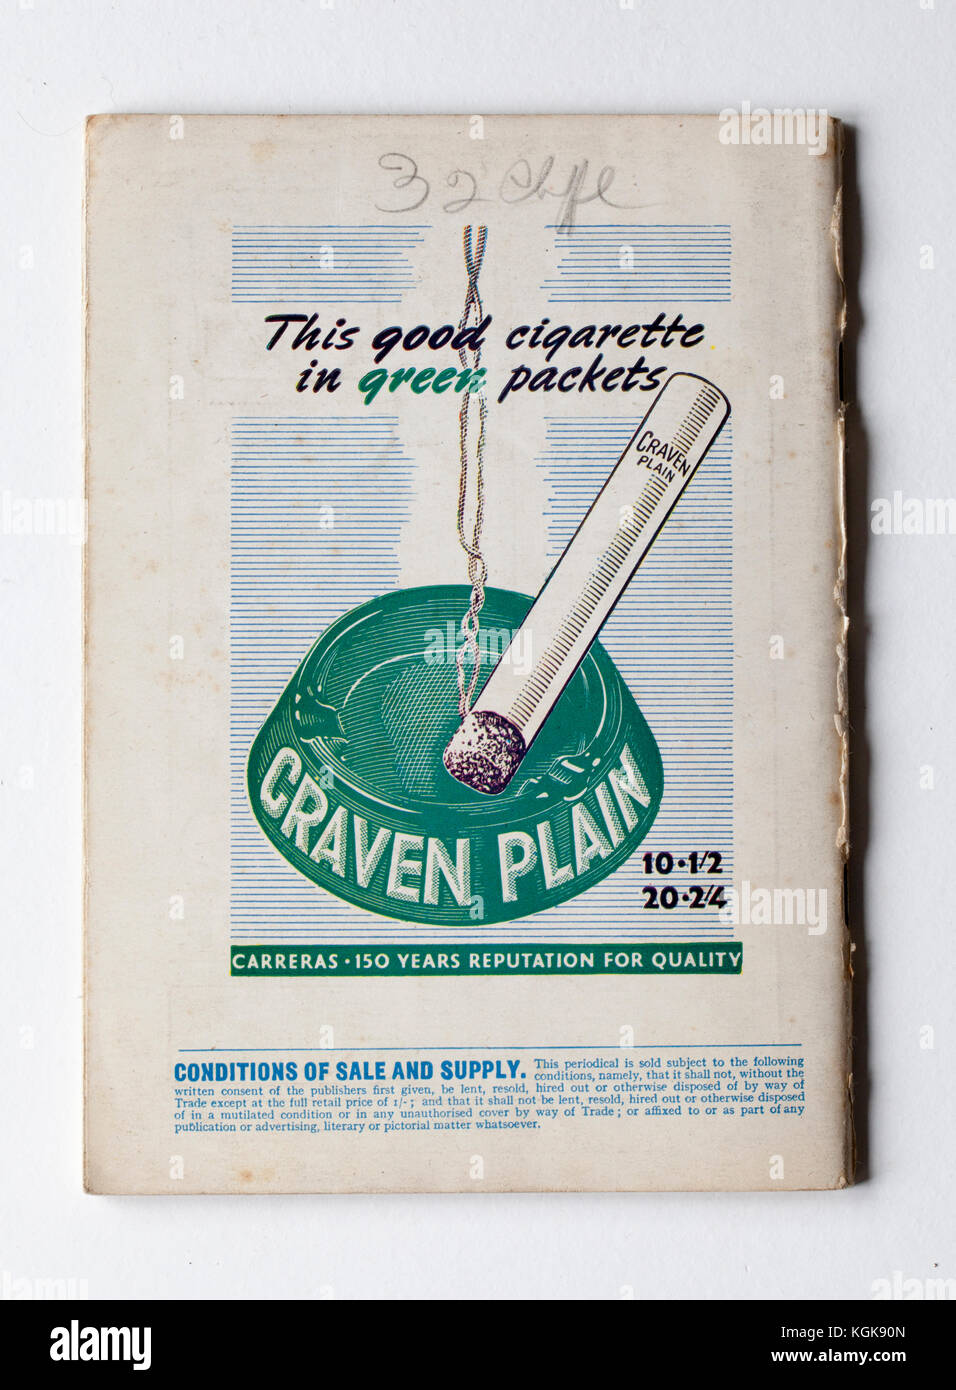 Craven Plain Zigaretten Tabak Werbung auf der Rückseite 1940 Lilliput Magazin Stockfoto